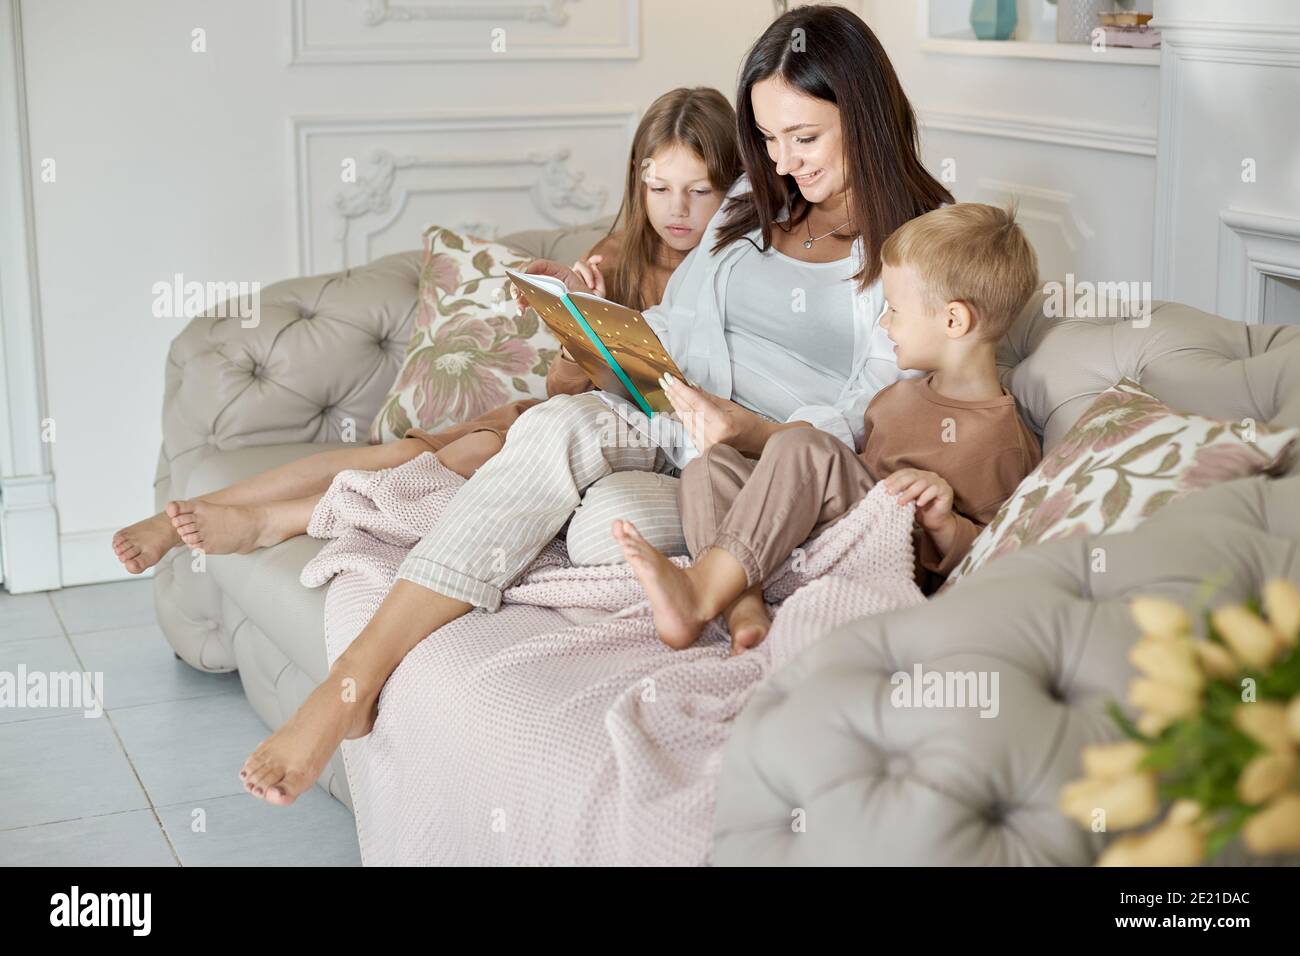 Maman lit un livre aux enfants. Une femme raconte une histoire à un garçon  et une fille avant d'aller au lit. Maman, fille et fils se détendent à la  maison lors d'une